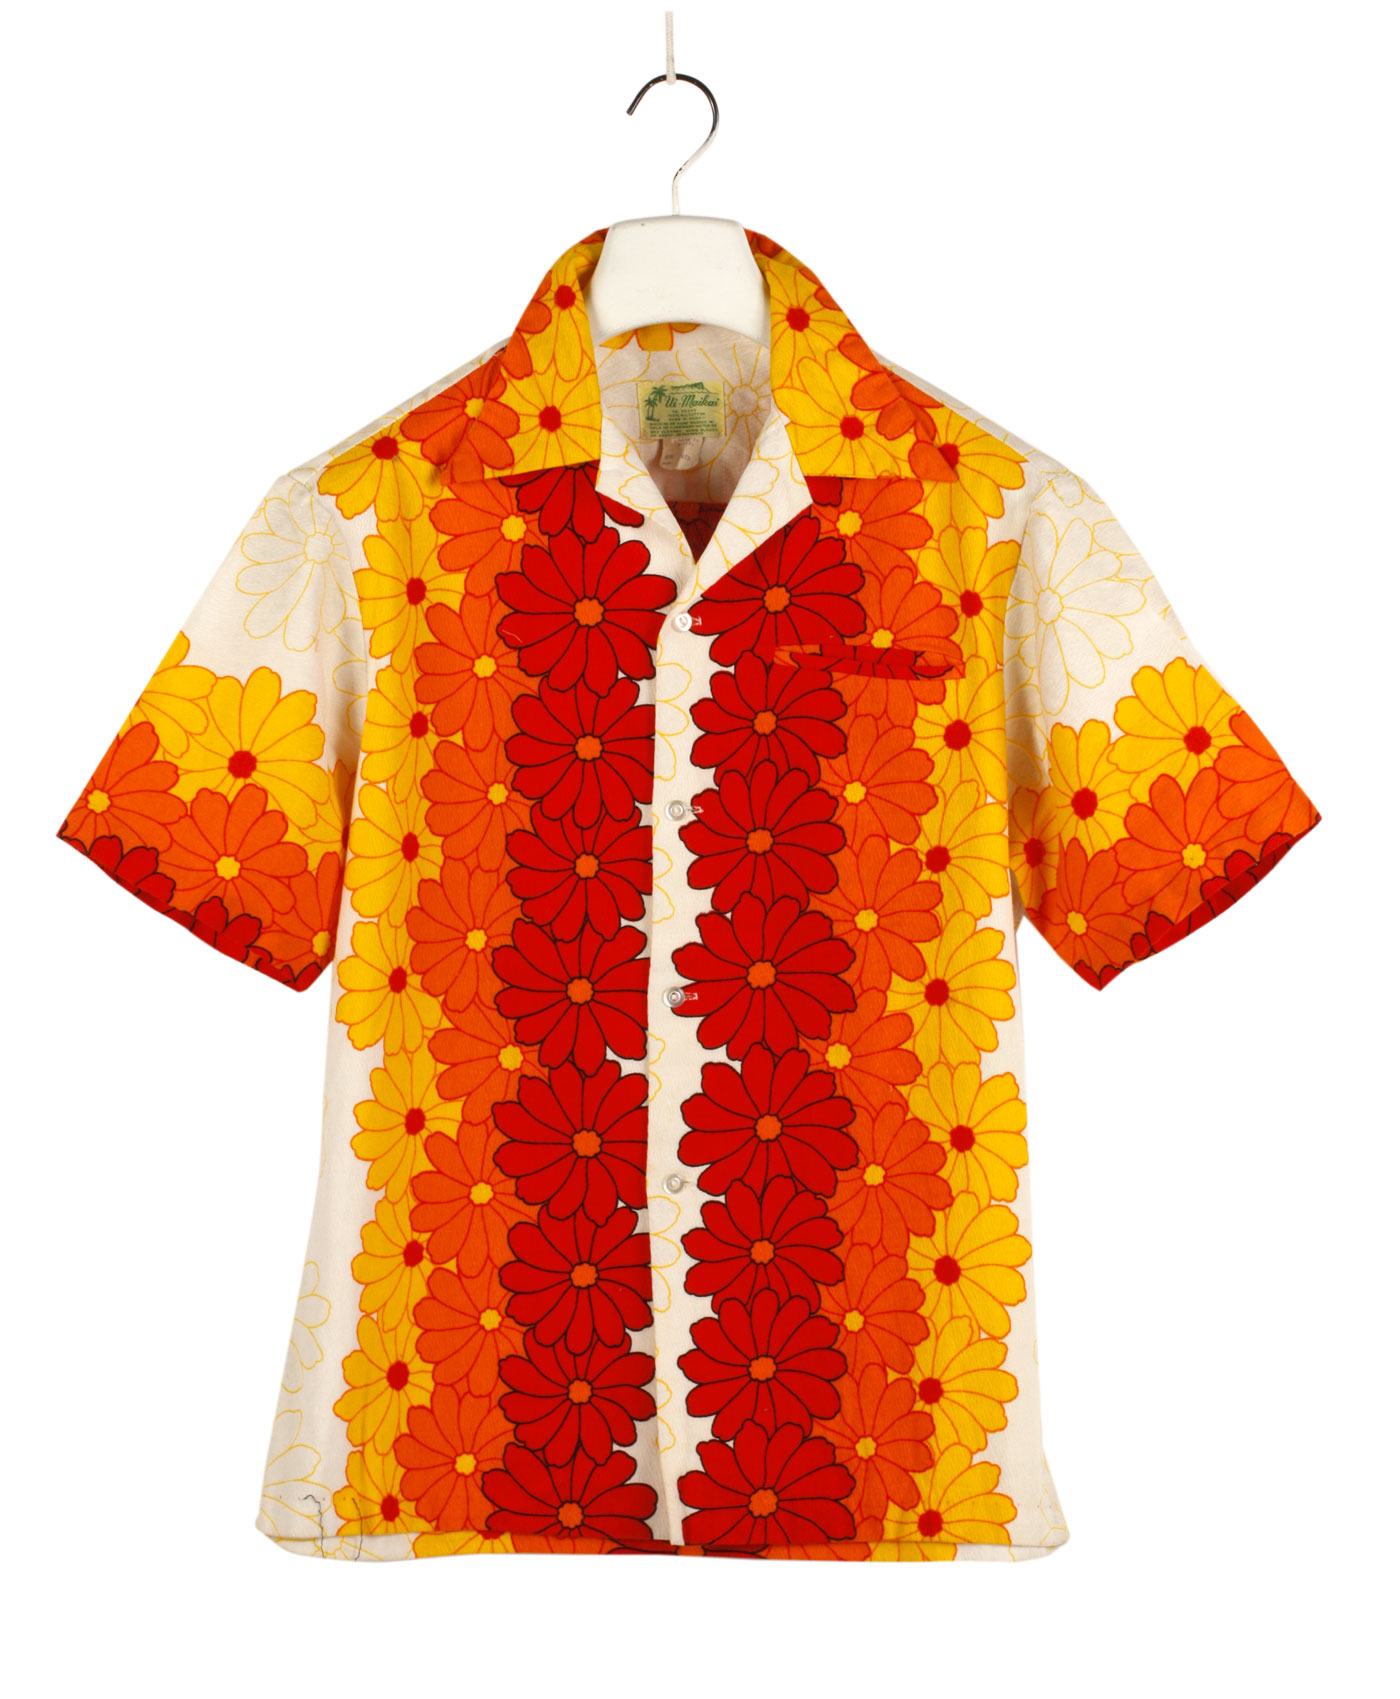 UI MAIKAI Hawaiian shirt 60s